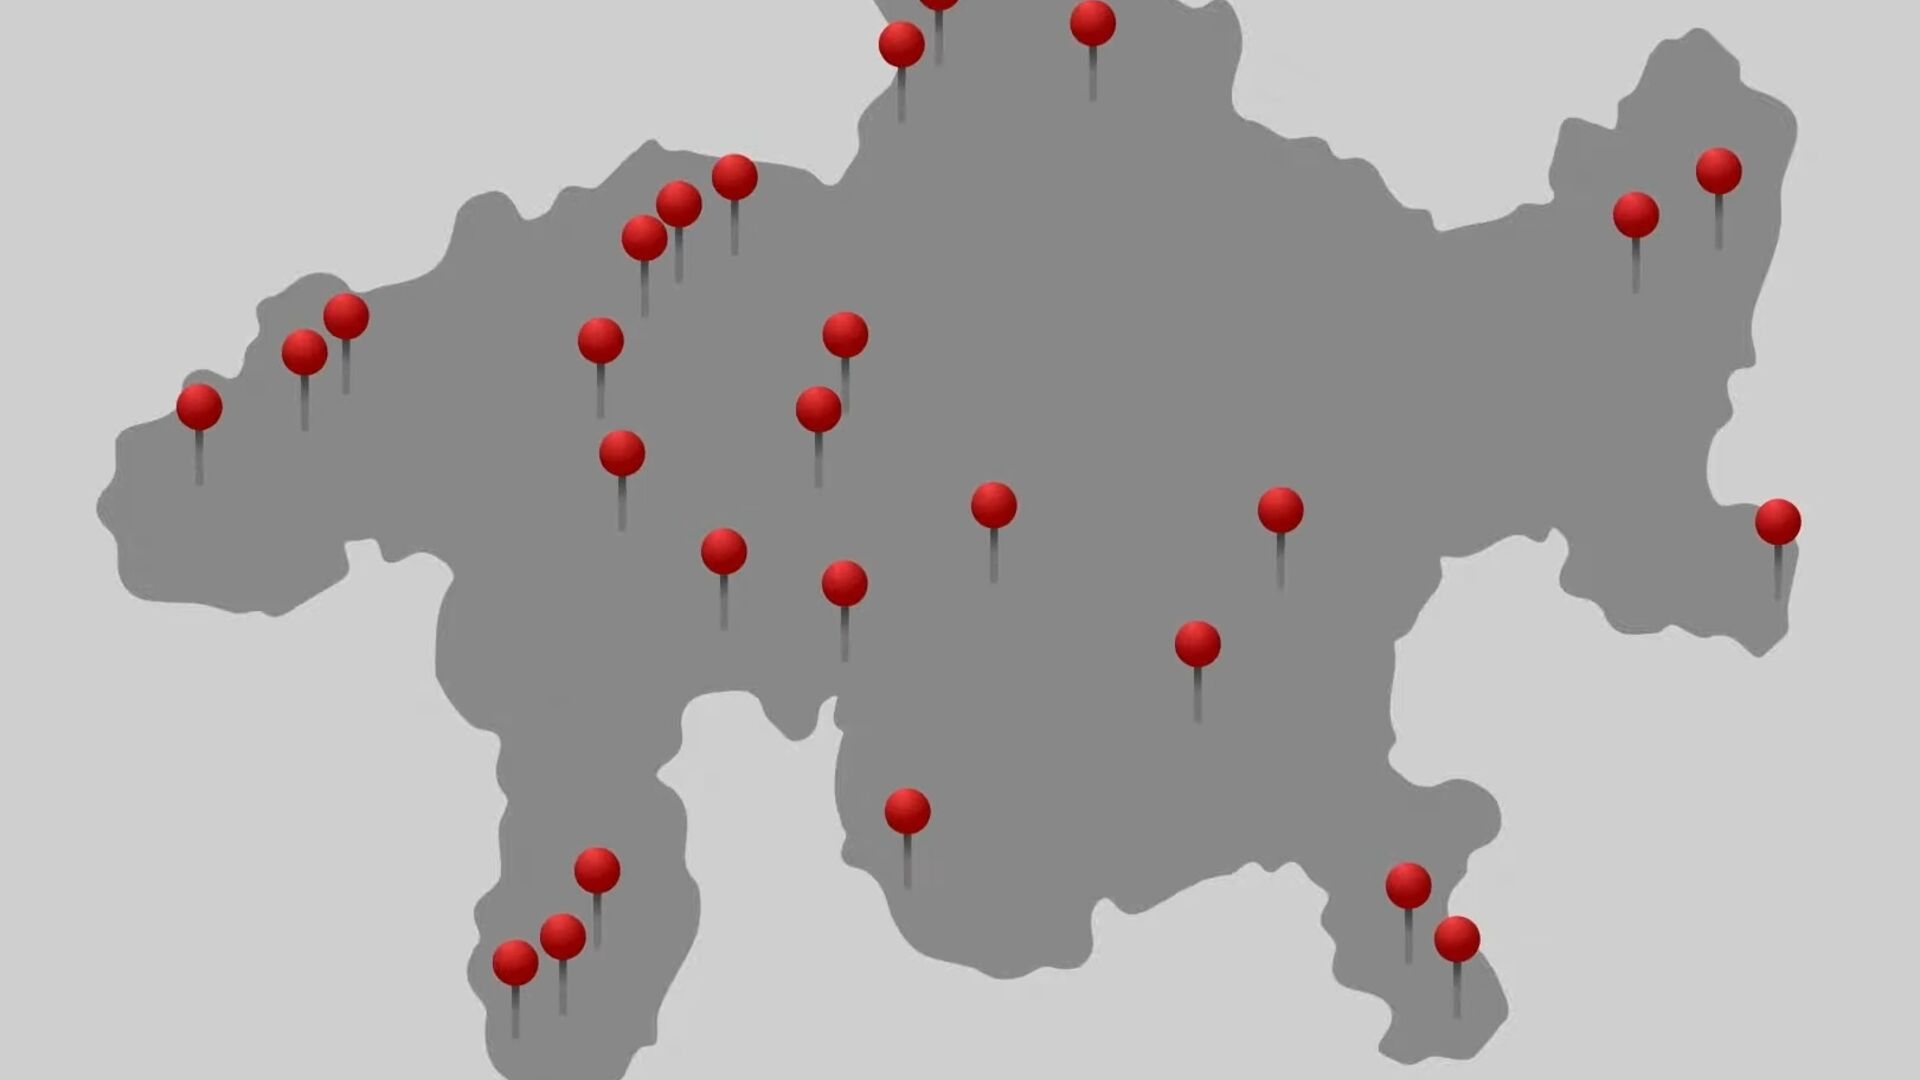 Panchine gialle: i 31 villaggi del Cantone svizzero dei Grigioni in cui sono distribuite le 56 sedute che invitano la popolazione a sedersi, a conversare e a darsi reciproco ascolto